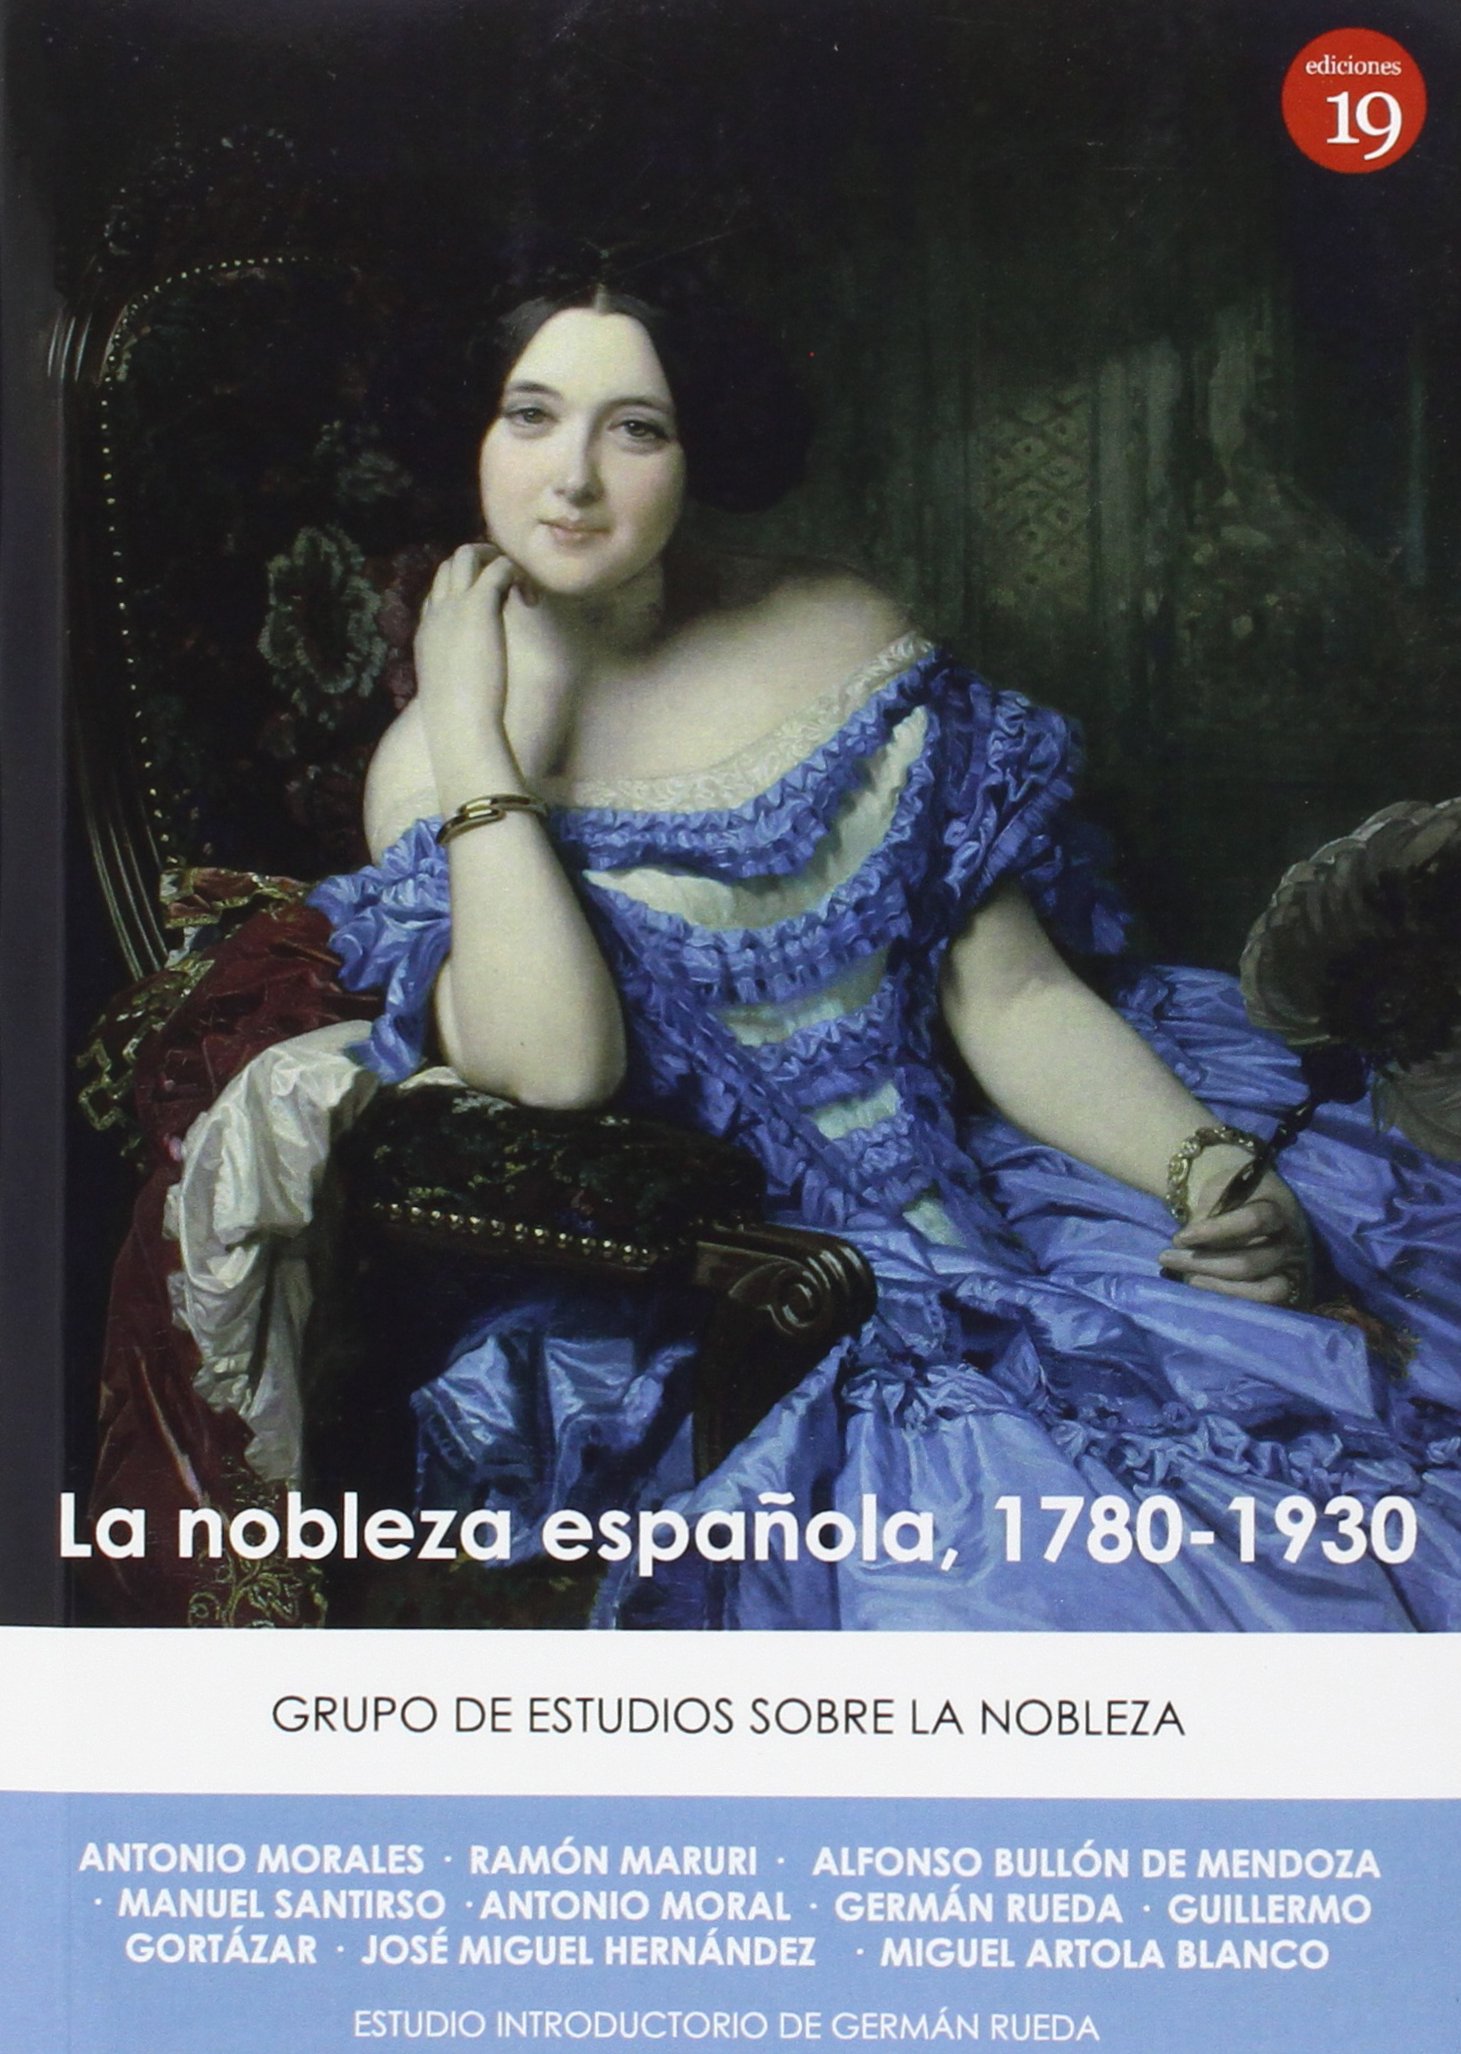 Imagen de portada del libro La nobleza española, 1780-1930